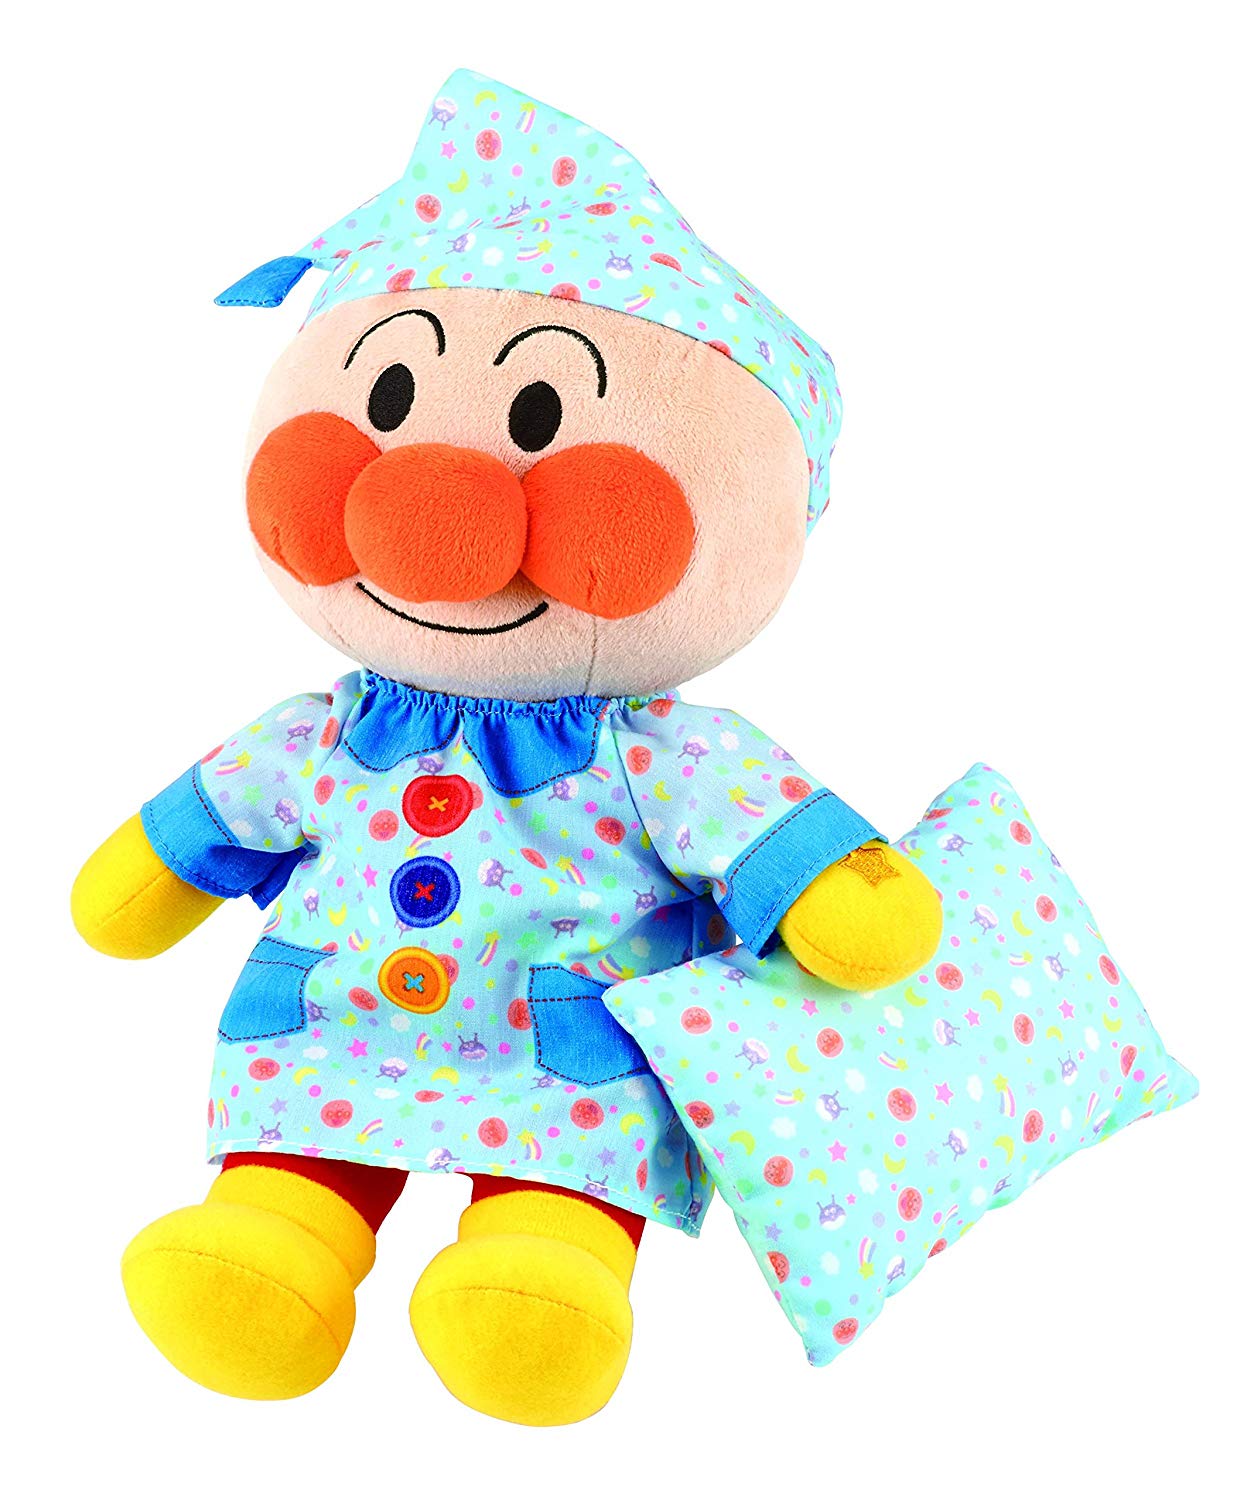 全新 日本正版 Anpanman  麵包超人 晚安版 會說話的絨毛玩偶 陪伴寶寶睡覺 兒童知育玩具 親子同樂 禮物 日本必買代購